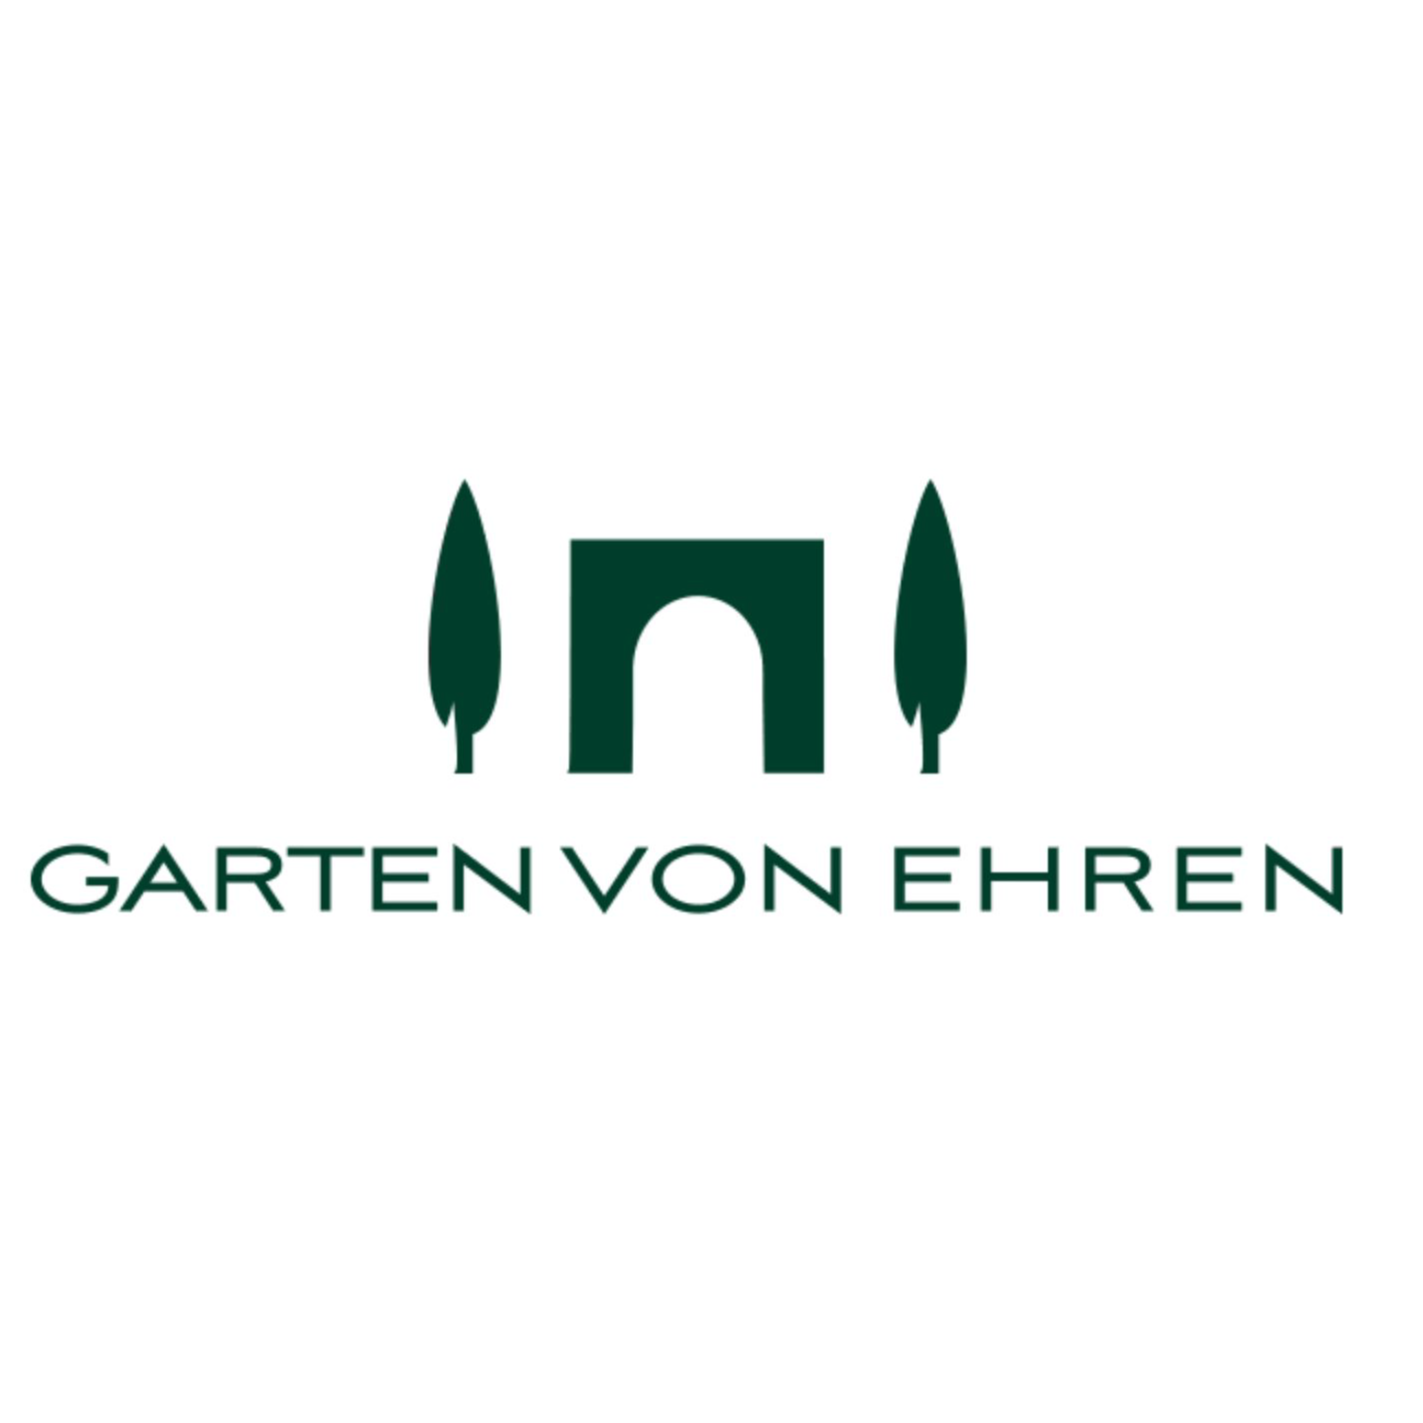 Johs. von Ehren Garten GmbH & Co.KG Logo